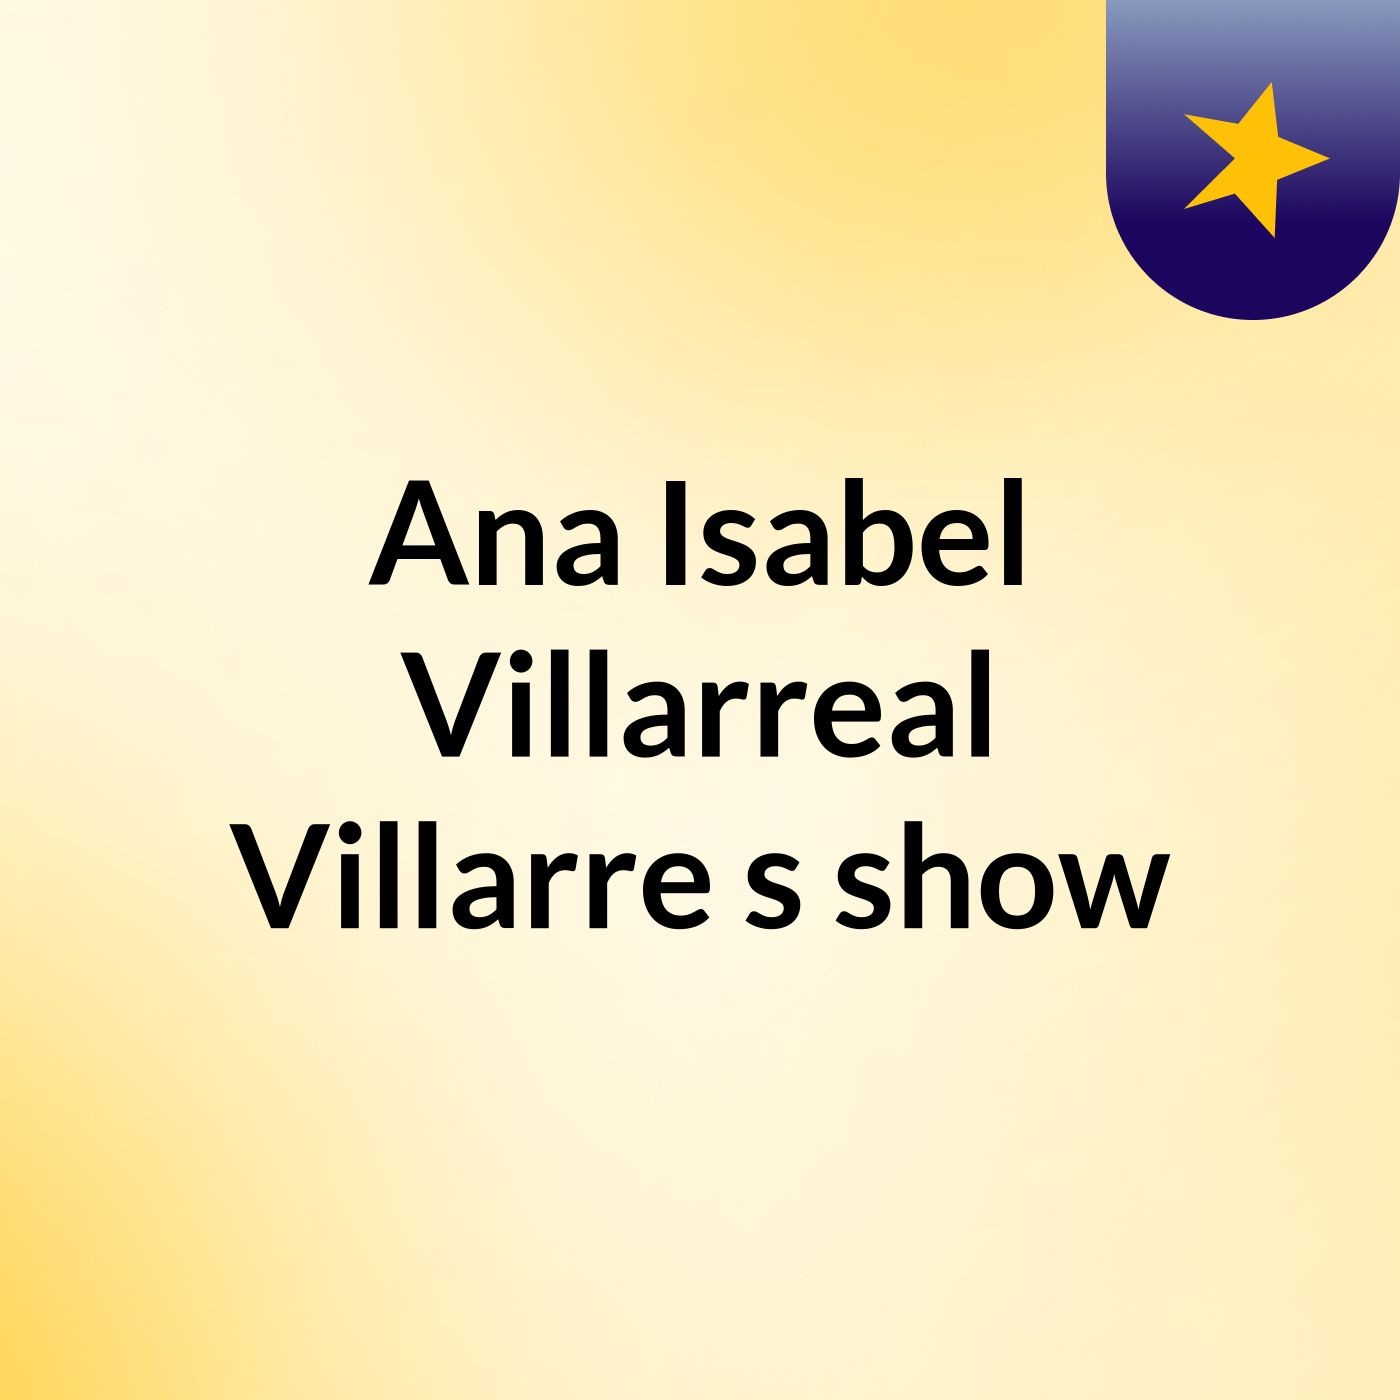 Ana Isabel Villarreal Villarre's show